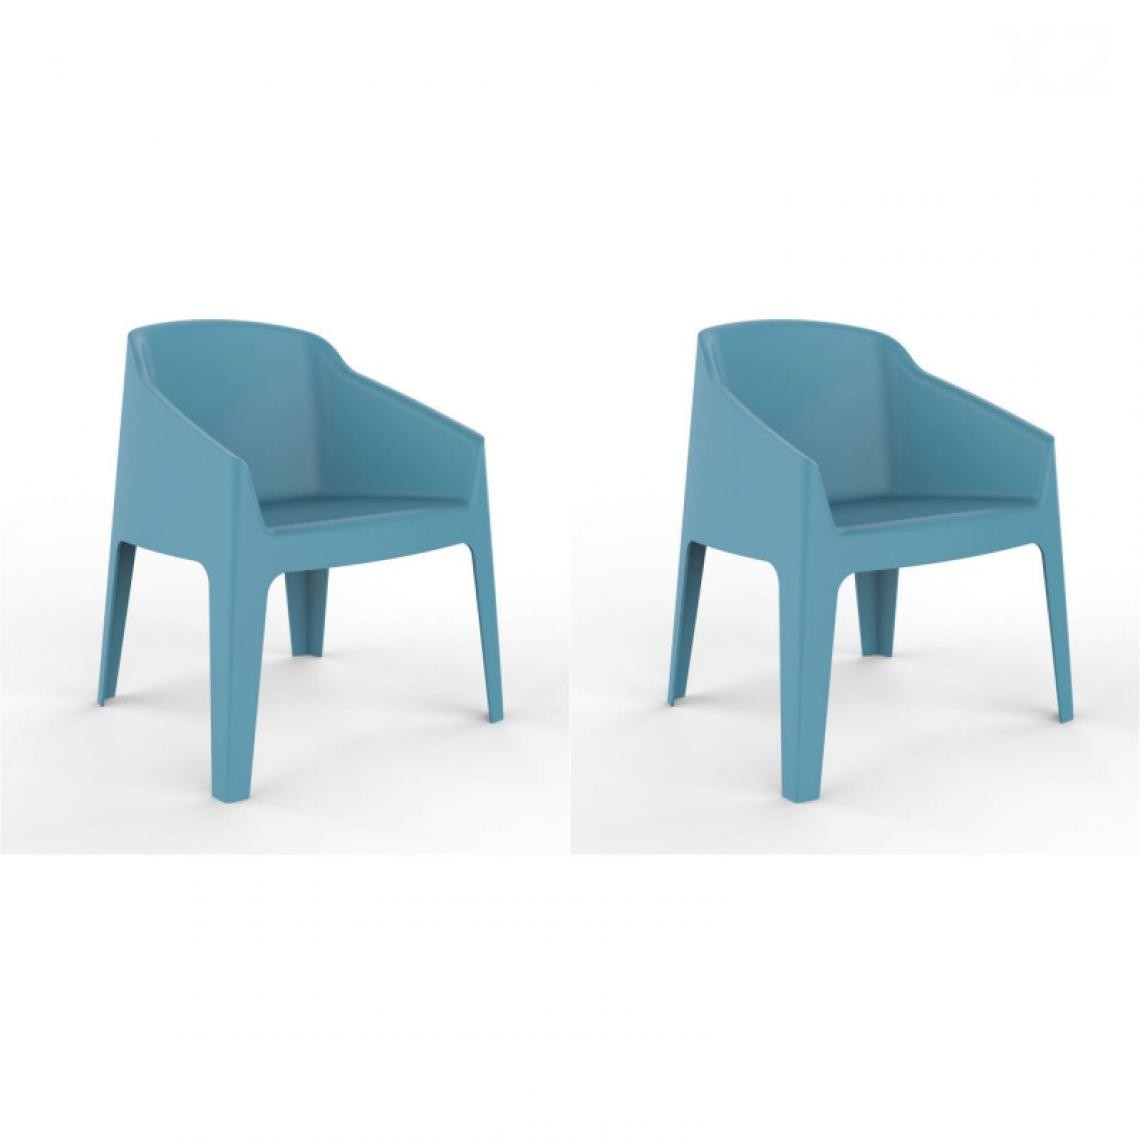 Resol - Set 2 Chaise Lounge Baku - RESOL - Bleu RétroFibre de verre, Polypropylène - Chaises